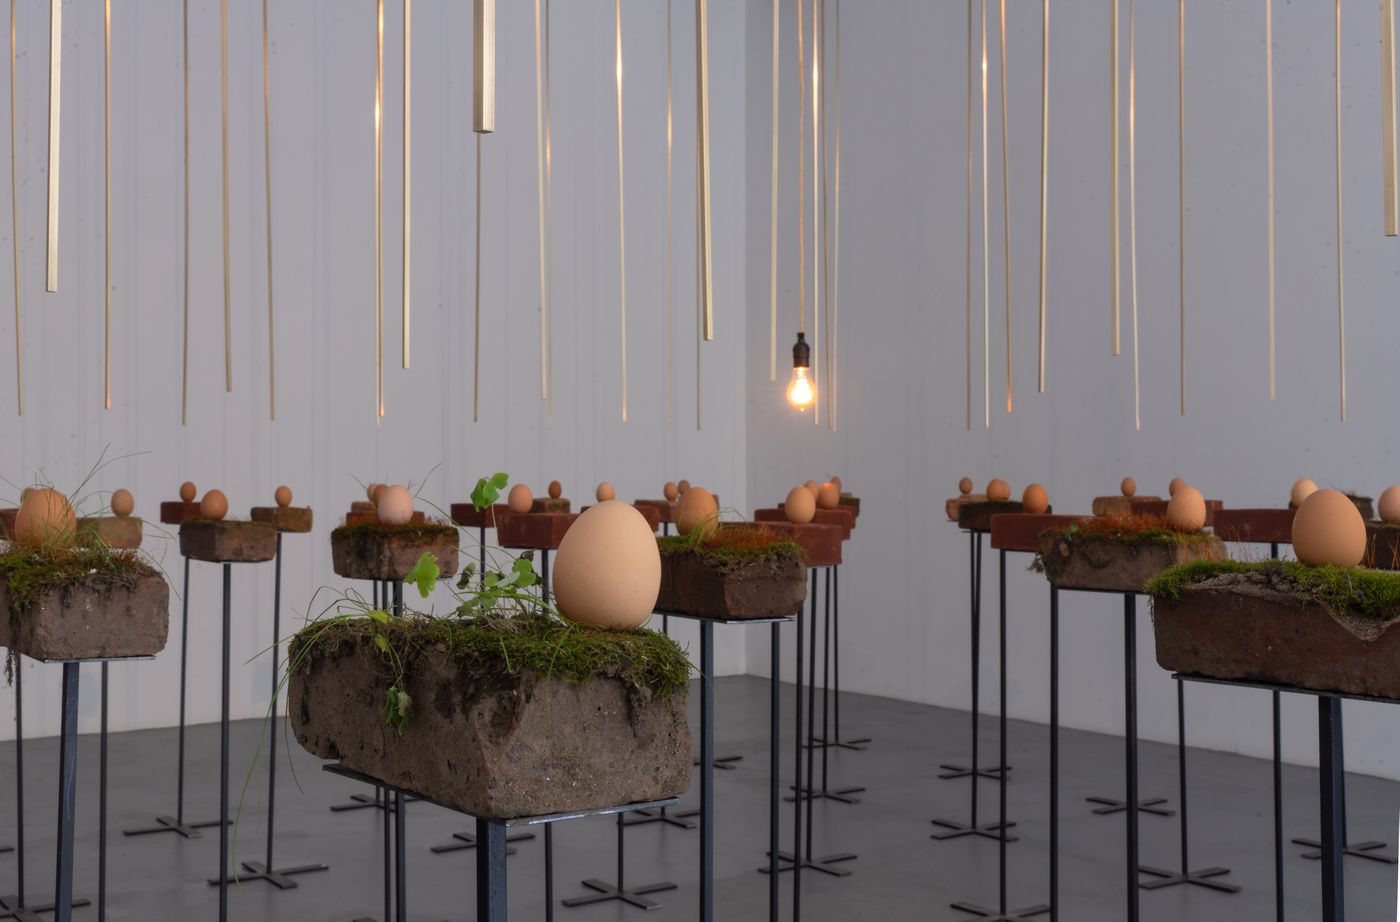 Gabriel Chaile, Salir del surco al labrar la tierra: delirios de grandeza II, 2014, 49 huevos, ladrillos,
azófares, musgo, hierro, 383 x 441 cm. Cortesía: Barro NY